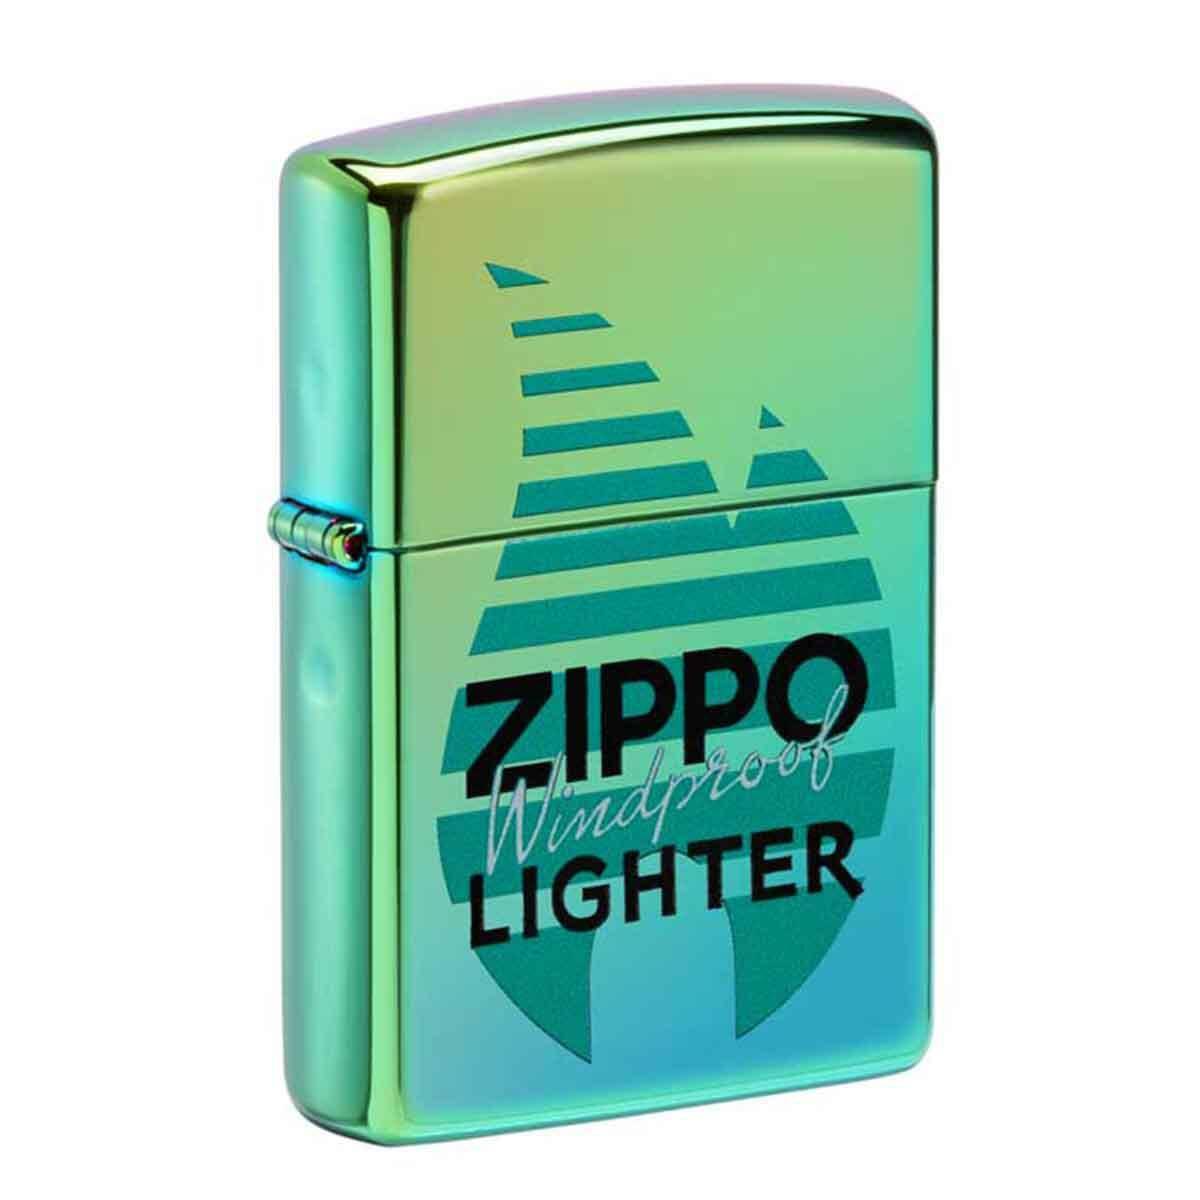 ZIPPO - LIGHTER